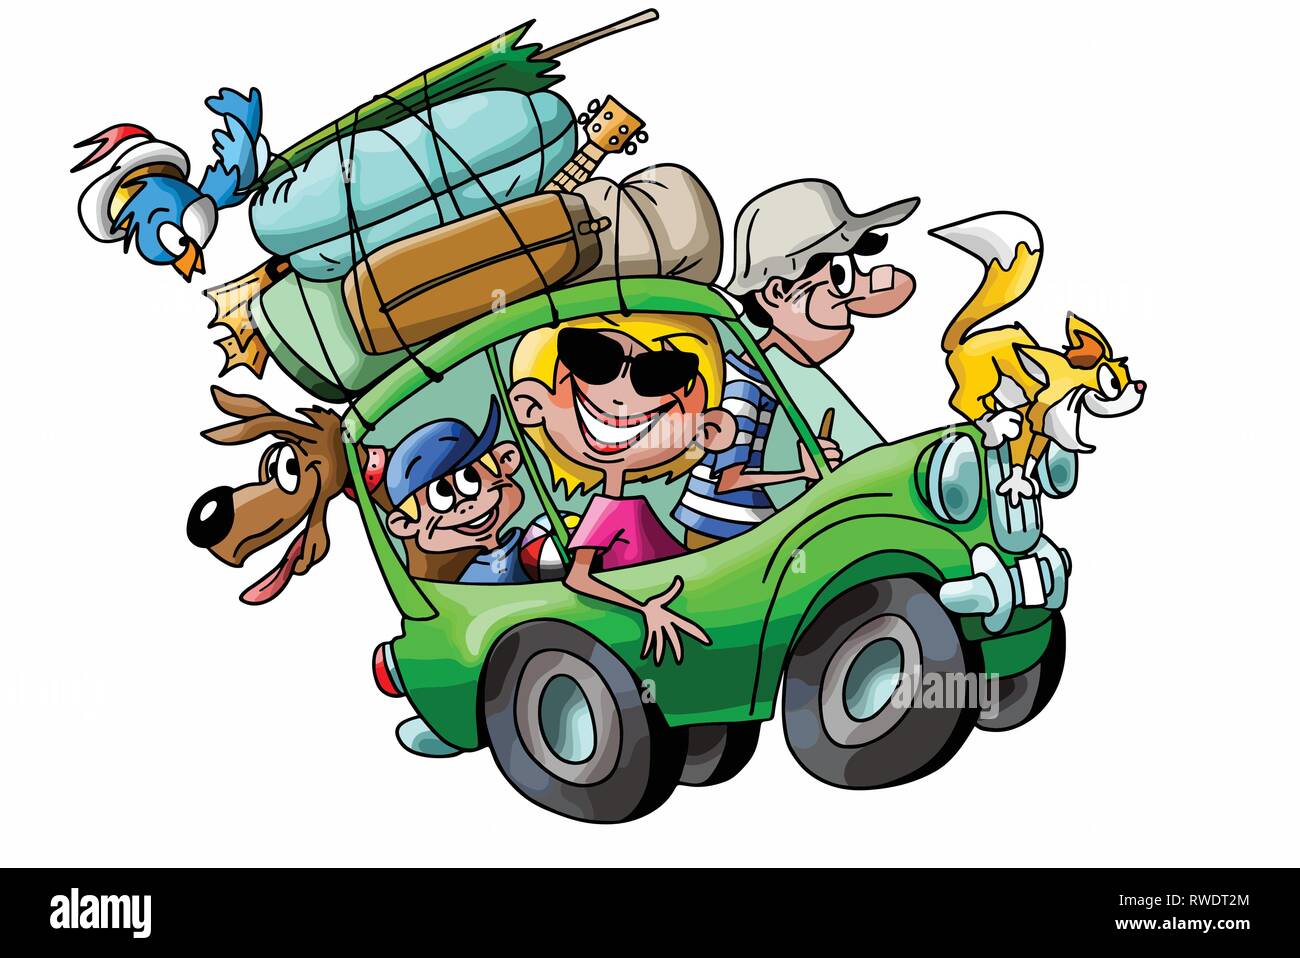 cartoon-fa​mille-de-p​artir-en-v​acances-av​ec-leur-vo​iture-et-c​harge-comp​lete-vecto​r-illustra​tion-rwdt2​m